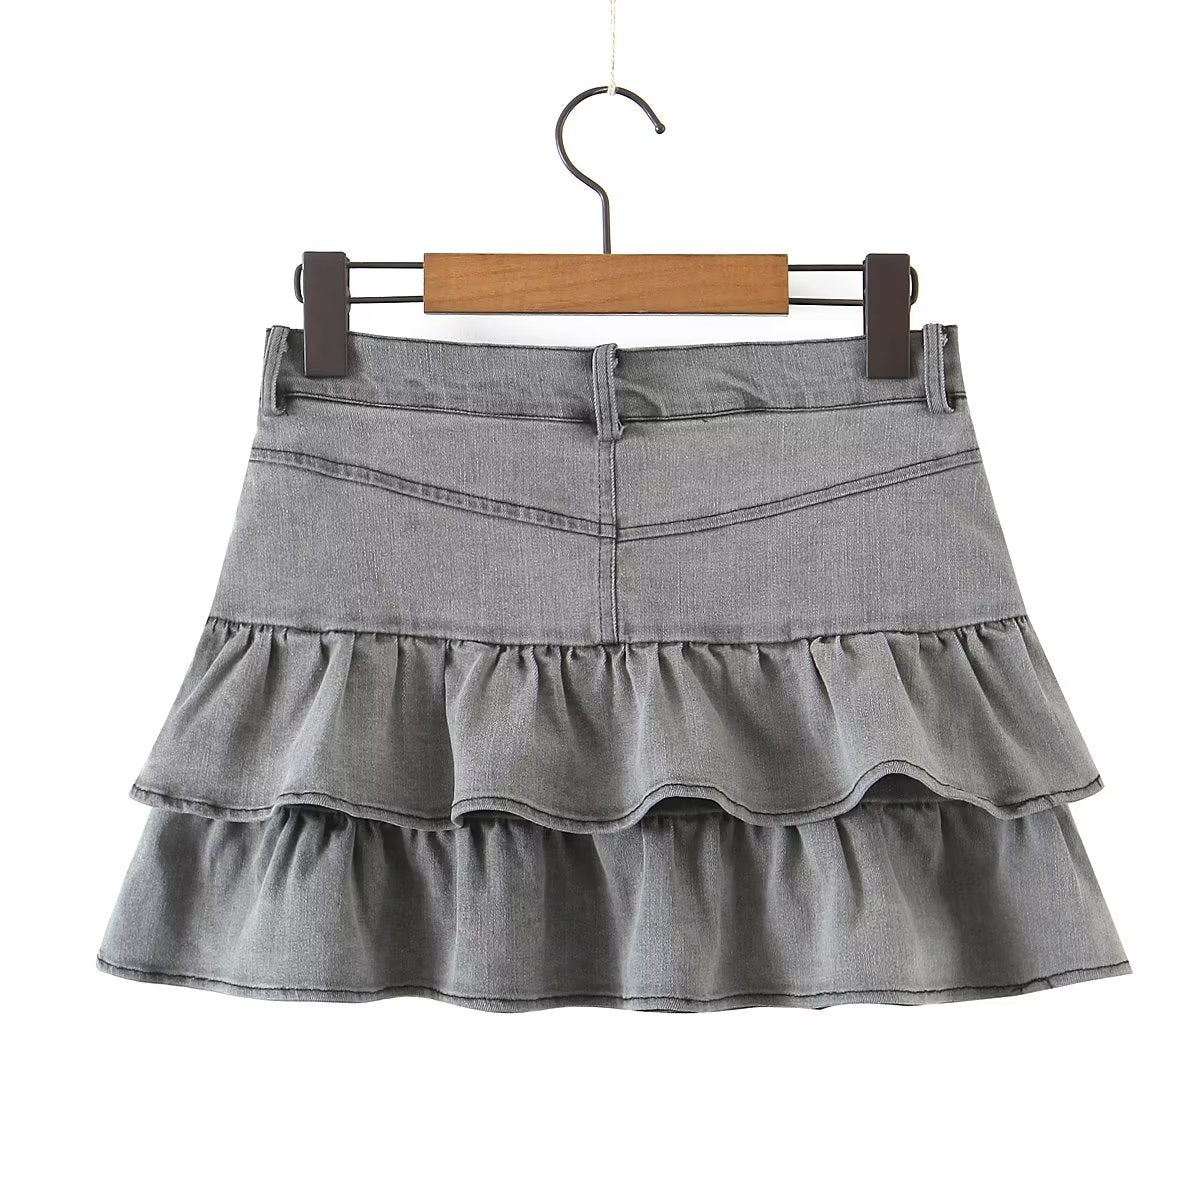 Summer Sexy High Waist Denim Skirt Retro Design Wooden Ear Puffy Cake A line Miniskirt